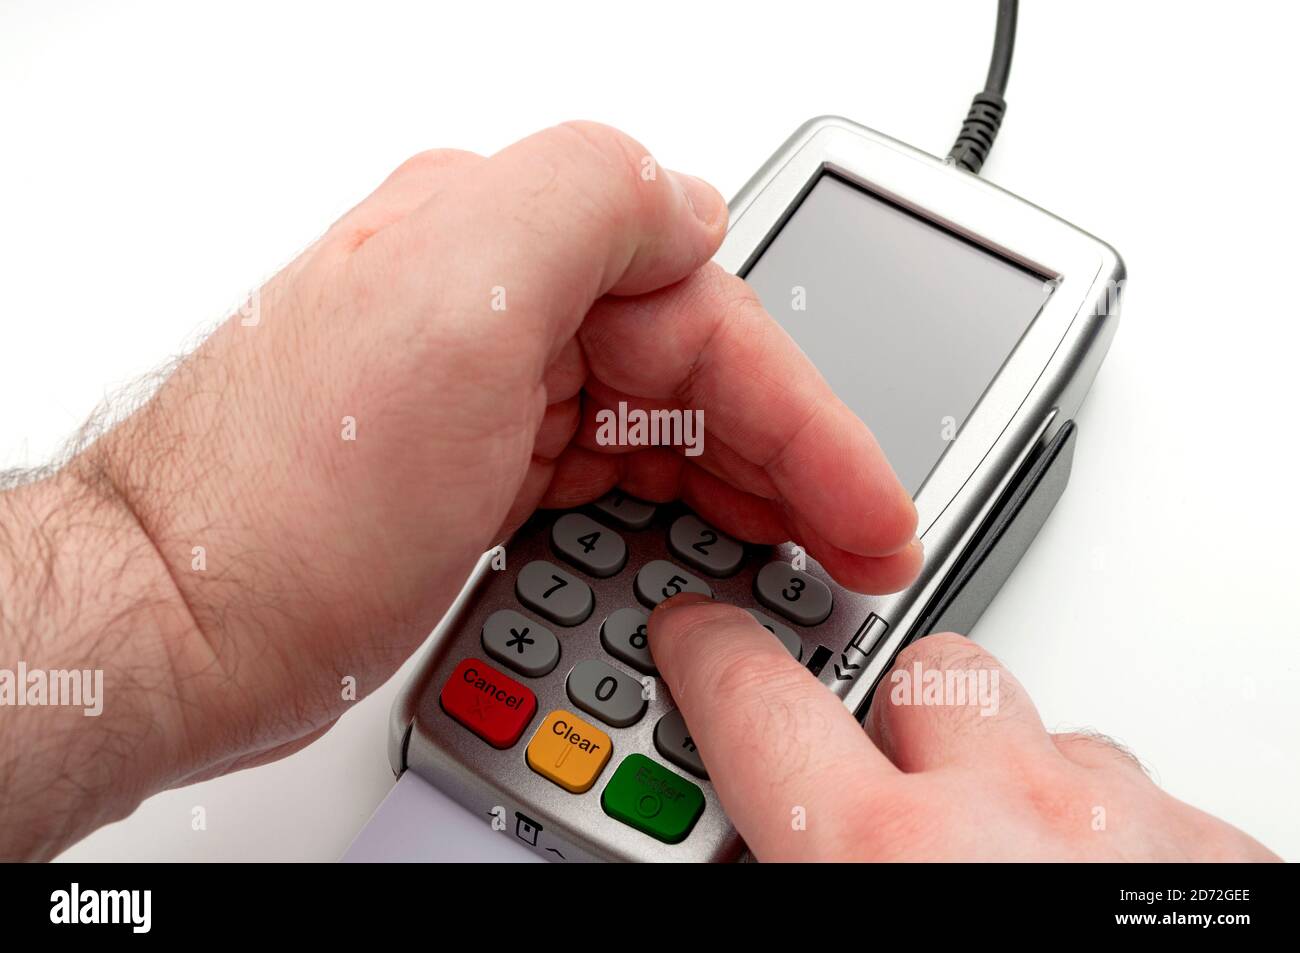 Pagamenti con carta di credito e di debito, privacy finanziaria e sicurezza dei dati bancari con la mano utilizzata come scudo mentre si inserisce il PIN sulla tastiera isolata Foto Stock